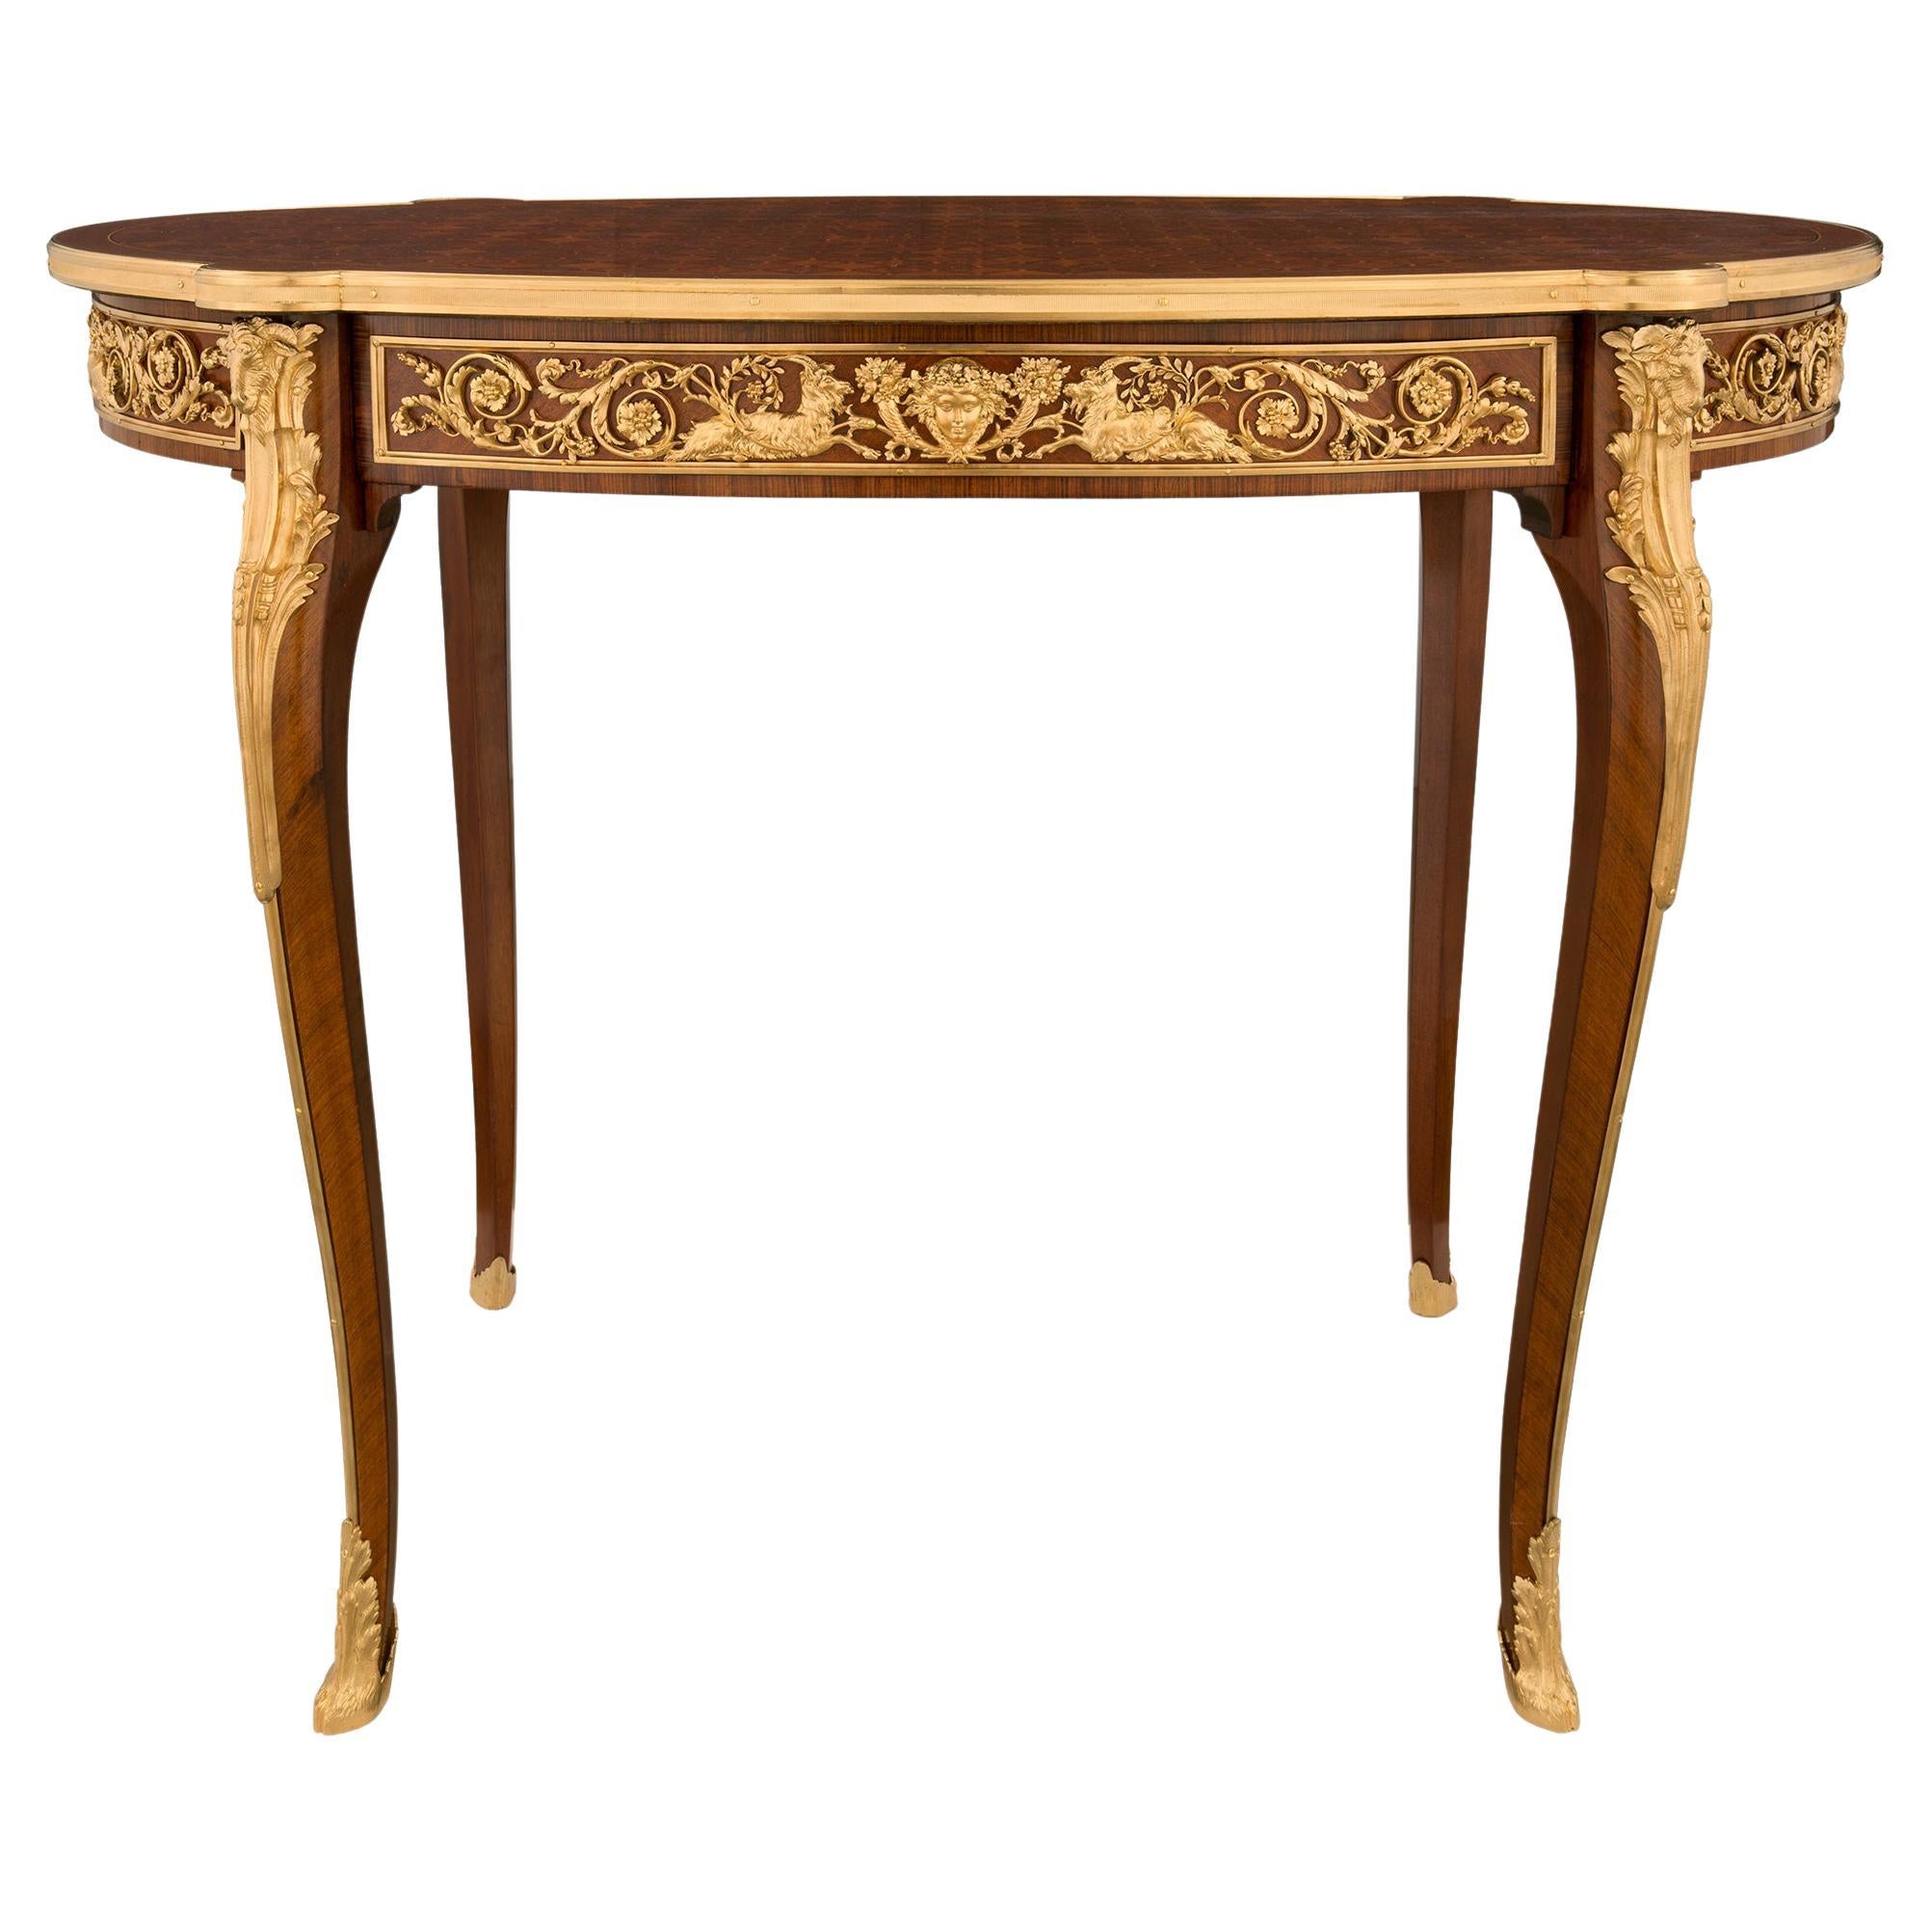 Ovaler Beistelltisch/Schreibtisch aus der Belle-Poque-Periode des 19. Jahrhunderts, signiert Sormani